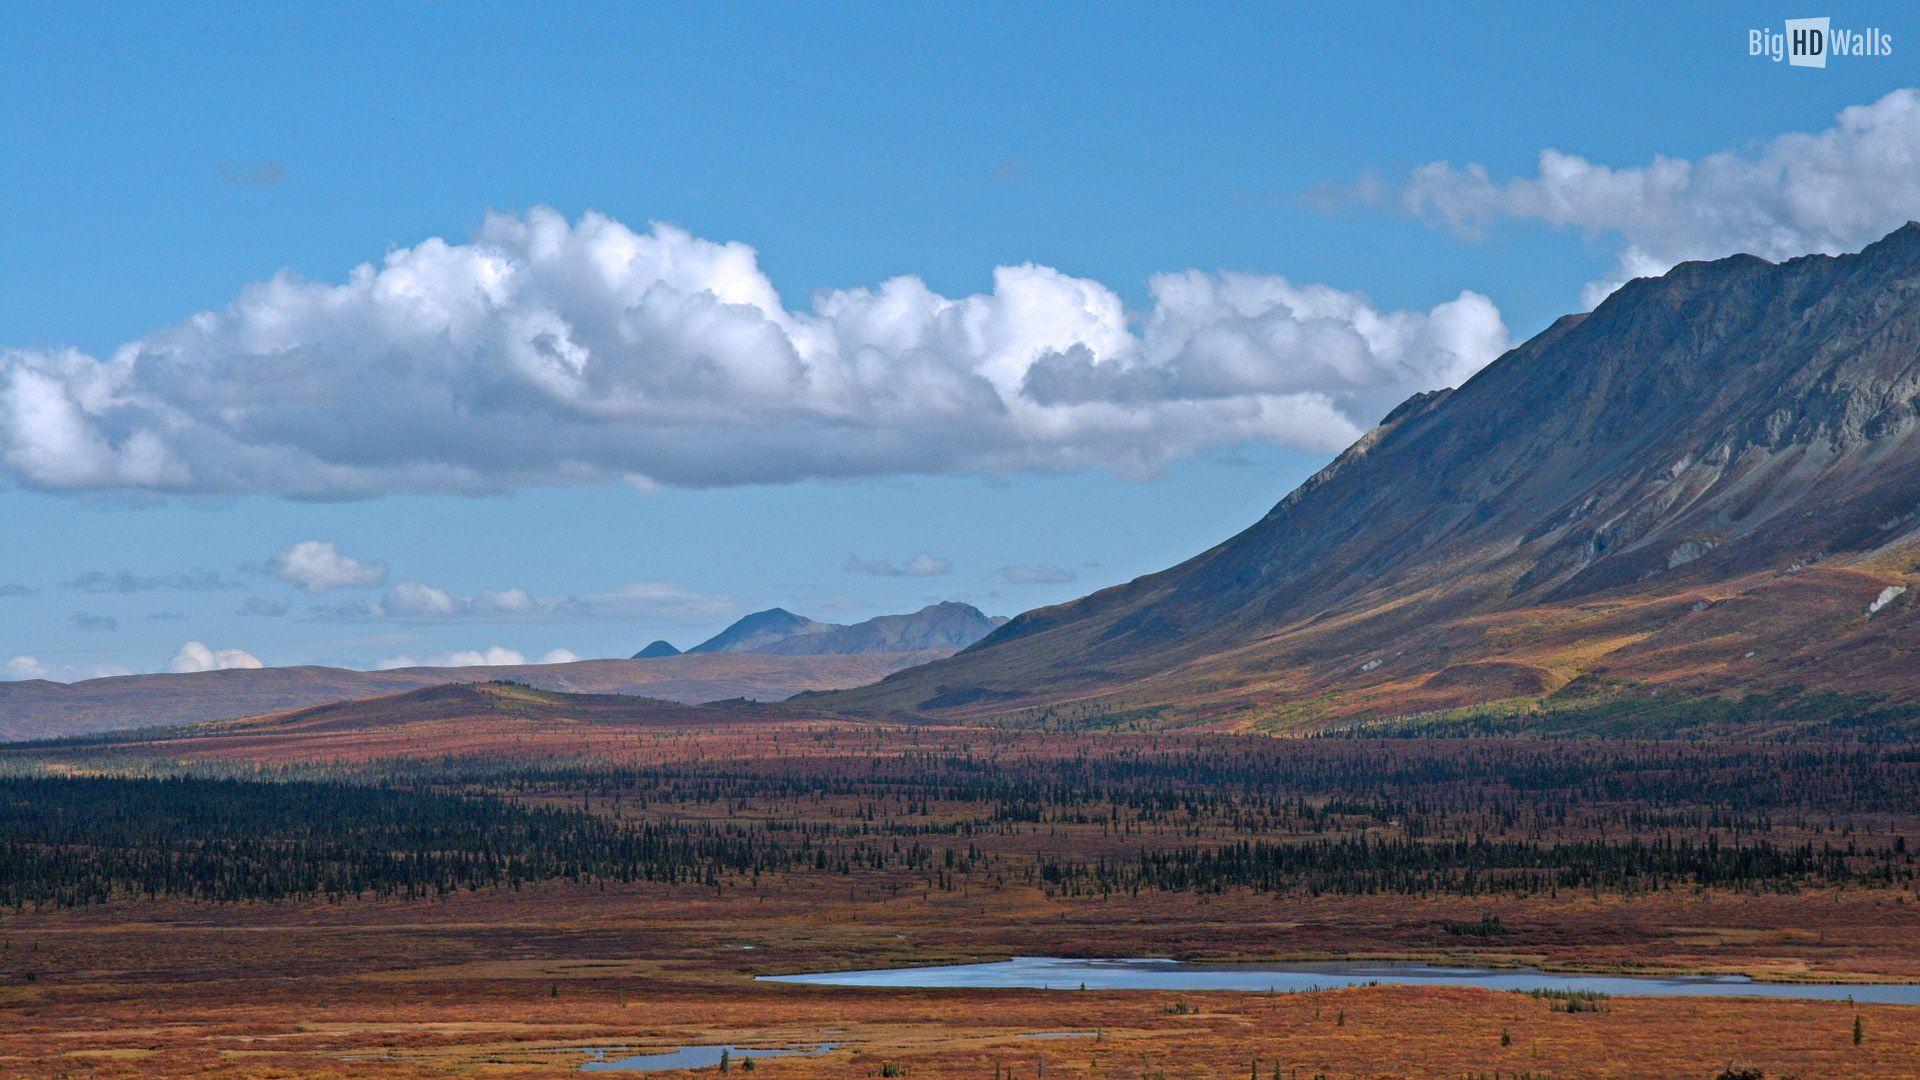 Alaska Landscape Wallpapers Top Free Alaska Landscape Backgrounds